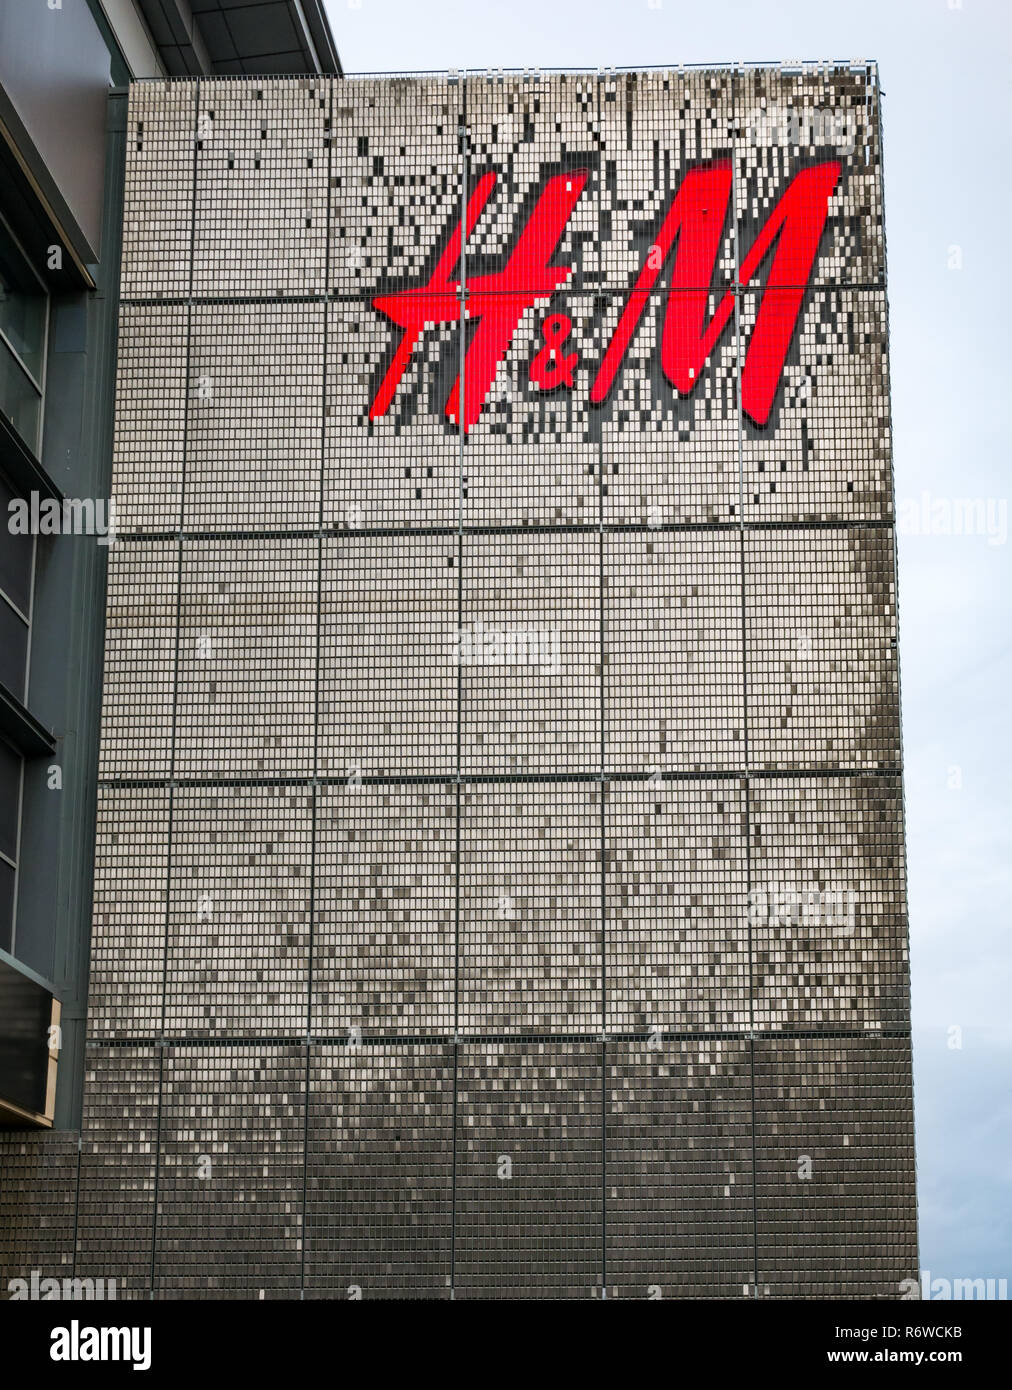 H&M magasin de vêtements de gros logo sur la construction de l'avant, centre commercial Ocean Terminal, Leith, Edinburgh, Ecosse, Royaume-Uni Banque D'Images